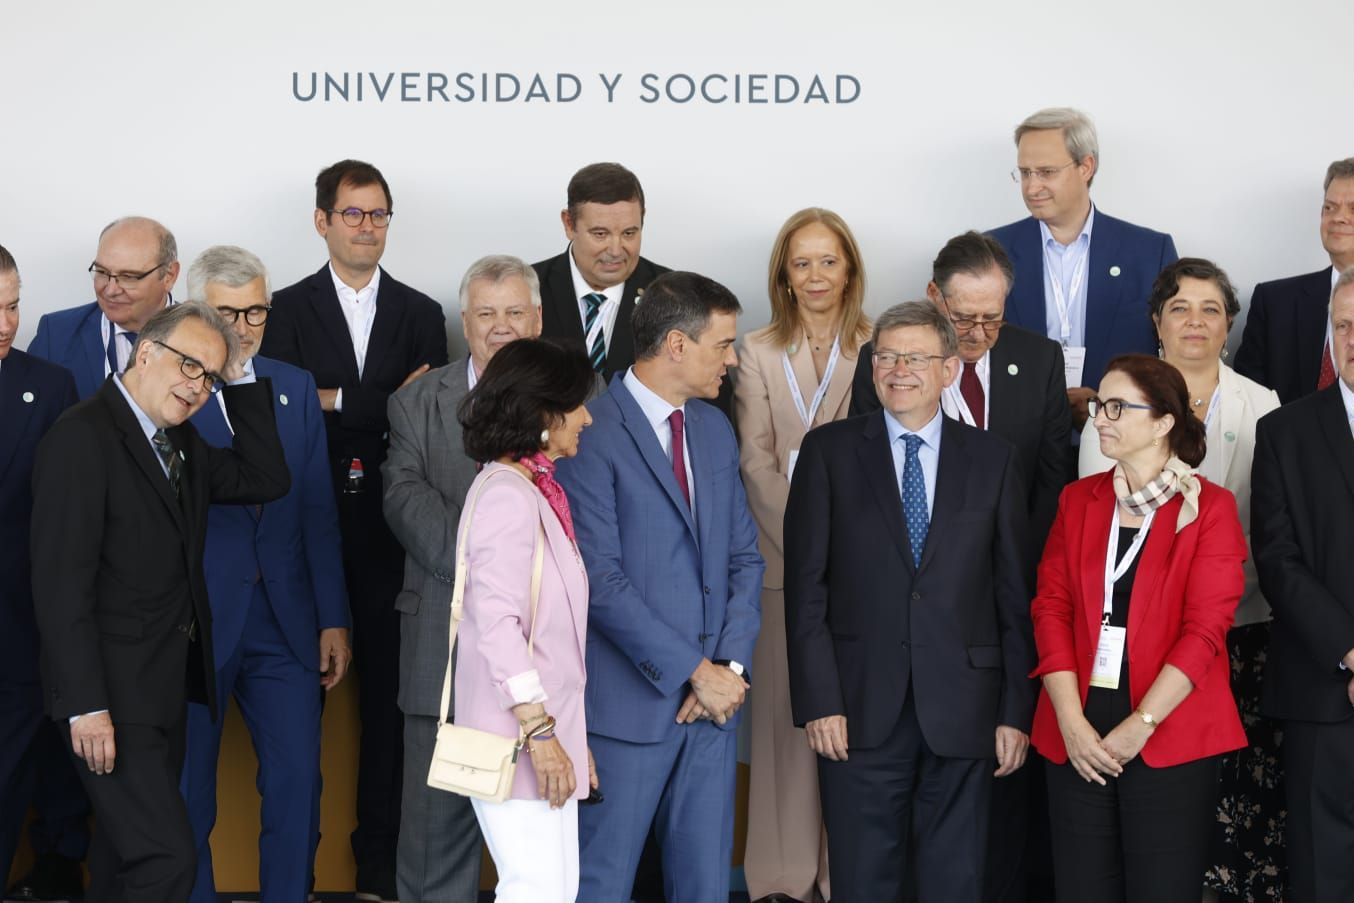 Pedro Sánchez inaugura el V Encuentro Internacional de Rectores Universia